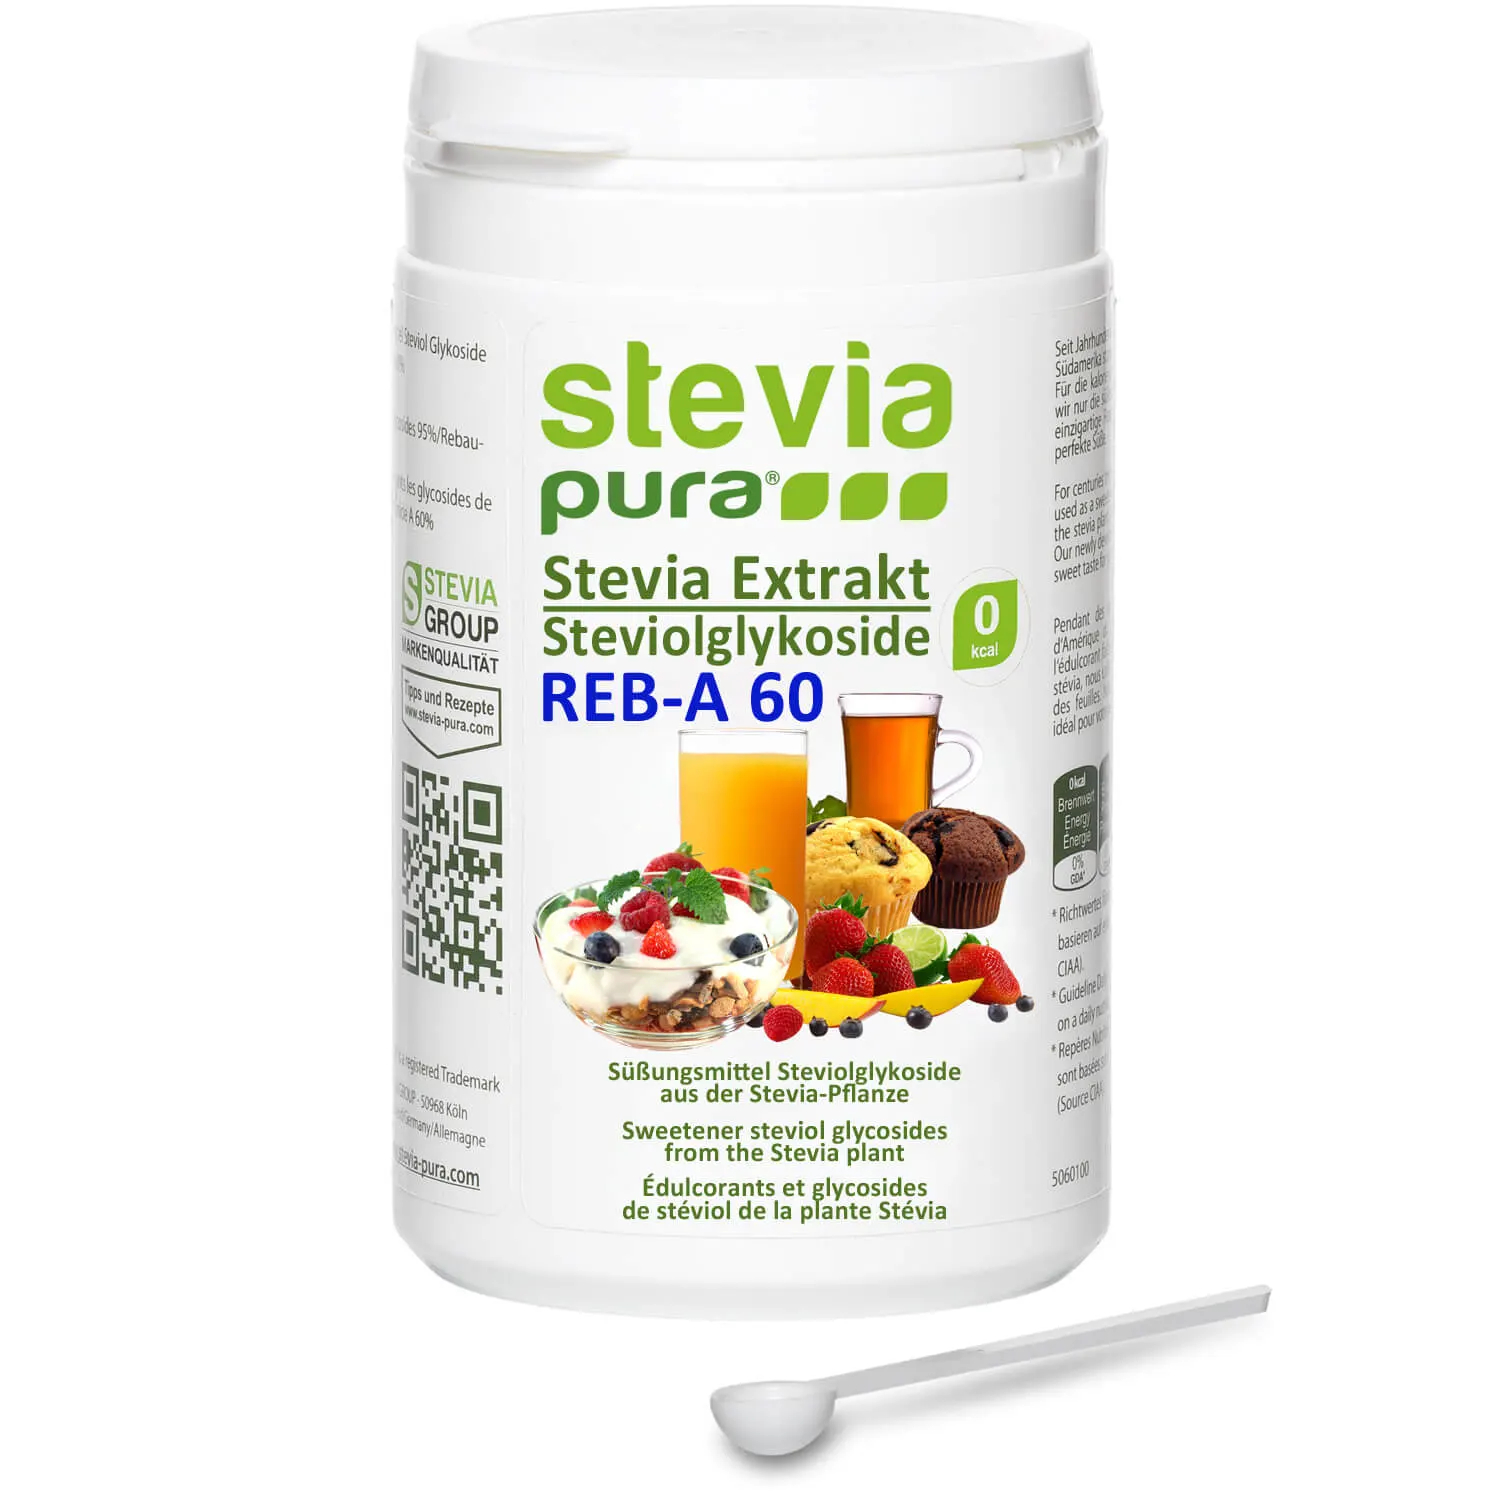 Comprar Extracto de Stevia en Polvo sin aditivos